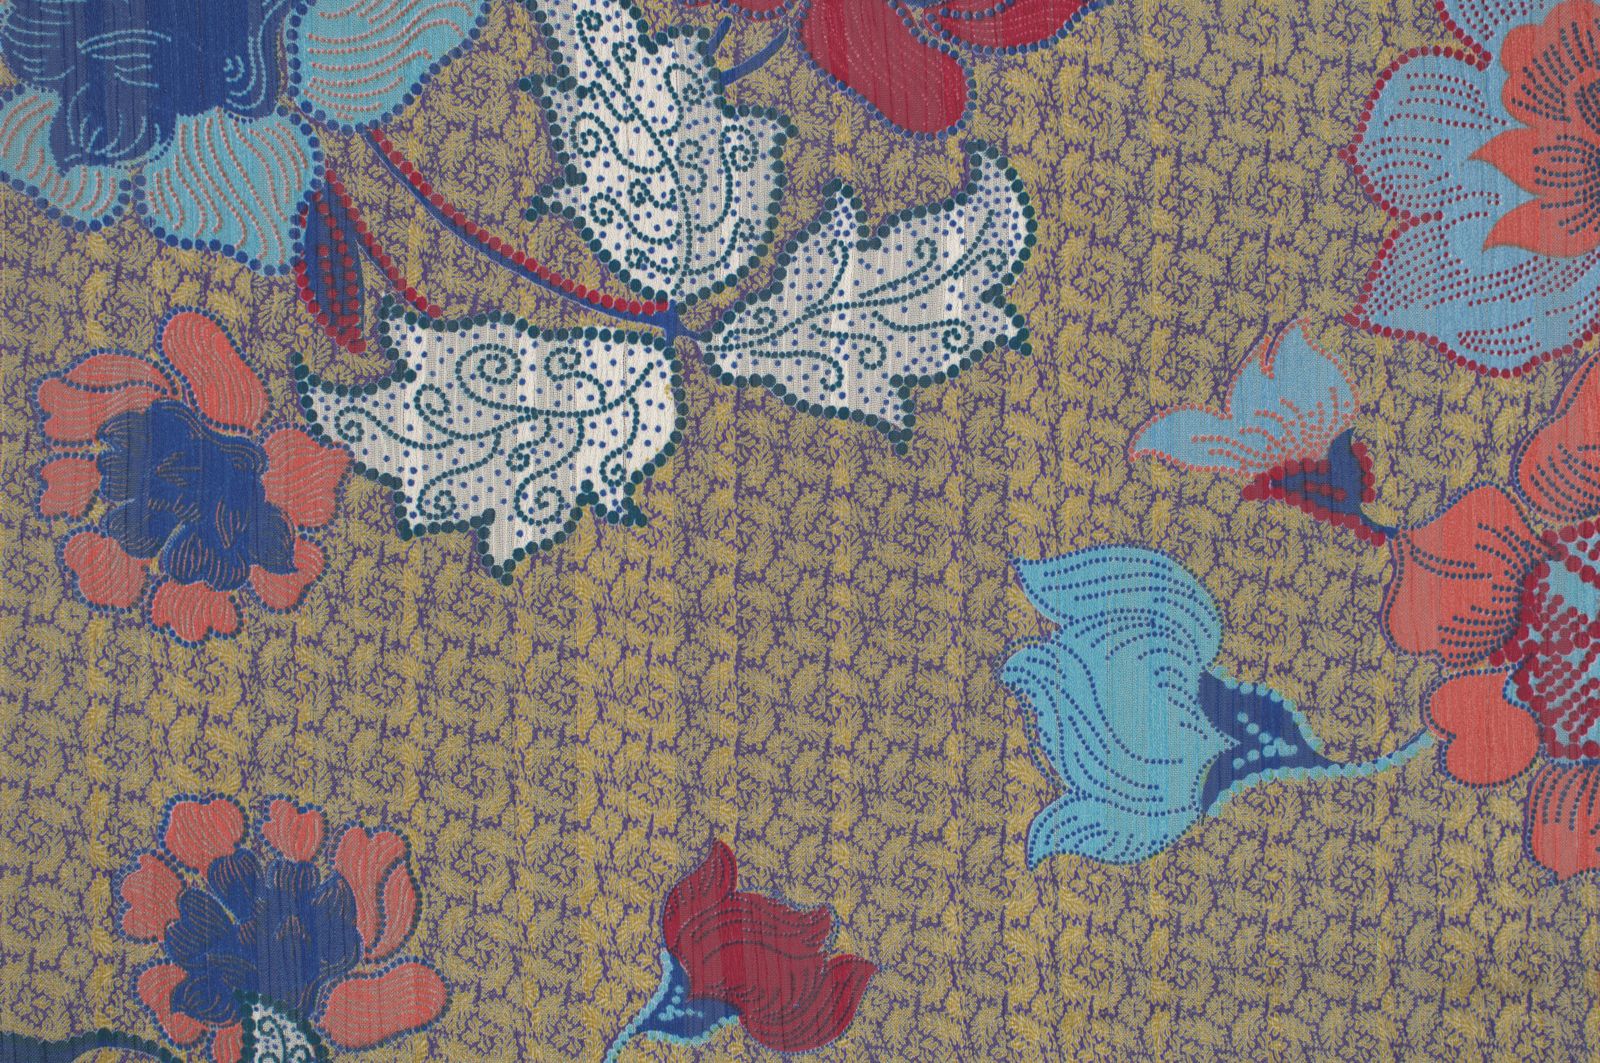 86003-02 Yellow, Purple Polyester Yoru Satin Floral Discharge Print 100% discharge floral polyester purple satin woven yellow yoru Print, Satin - knit fabric - woven fabric - fabric company - fabric wholesale - fabric b2b - fabric factory - high quality fabric - hong kong fabric - fabric hk - acetate fabric - cotton fabric - linen fabric - metallic fabric - nylon fabric - polyester fabric - spandex fabric - chun wing hing - cwh hk - fabric worldwide ship - 針織布 - 梳織布 - 布料公司- 布料批發 - 香港布料 - 秦榮興